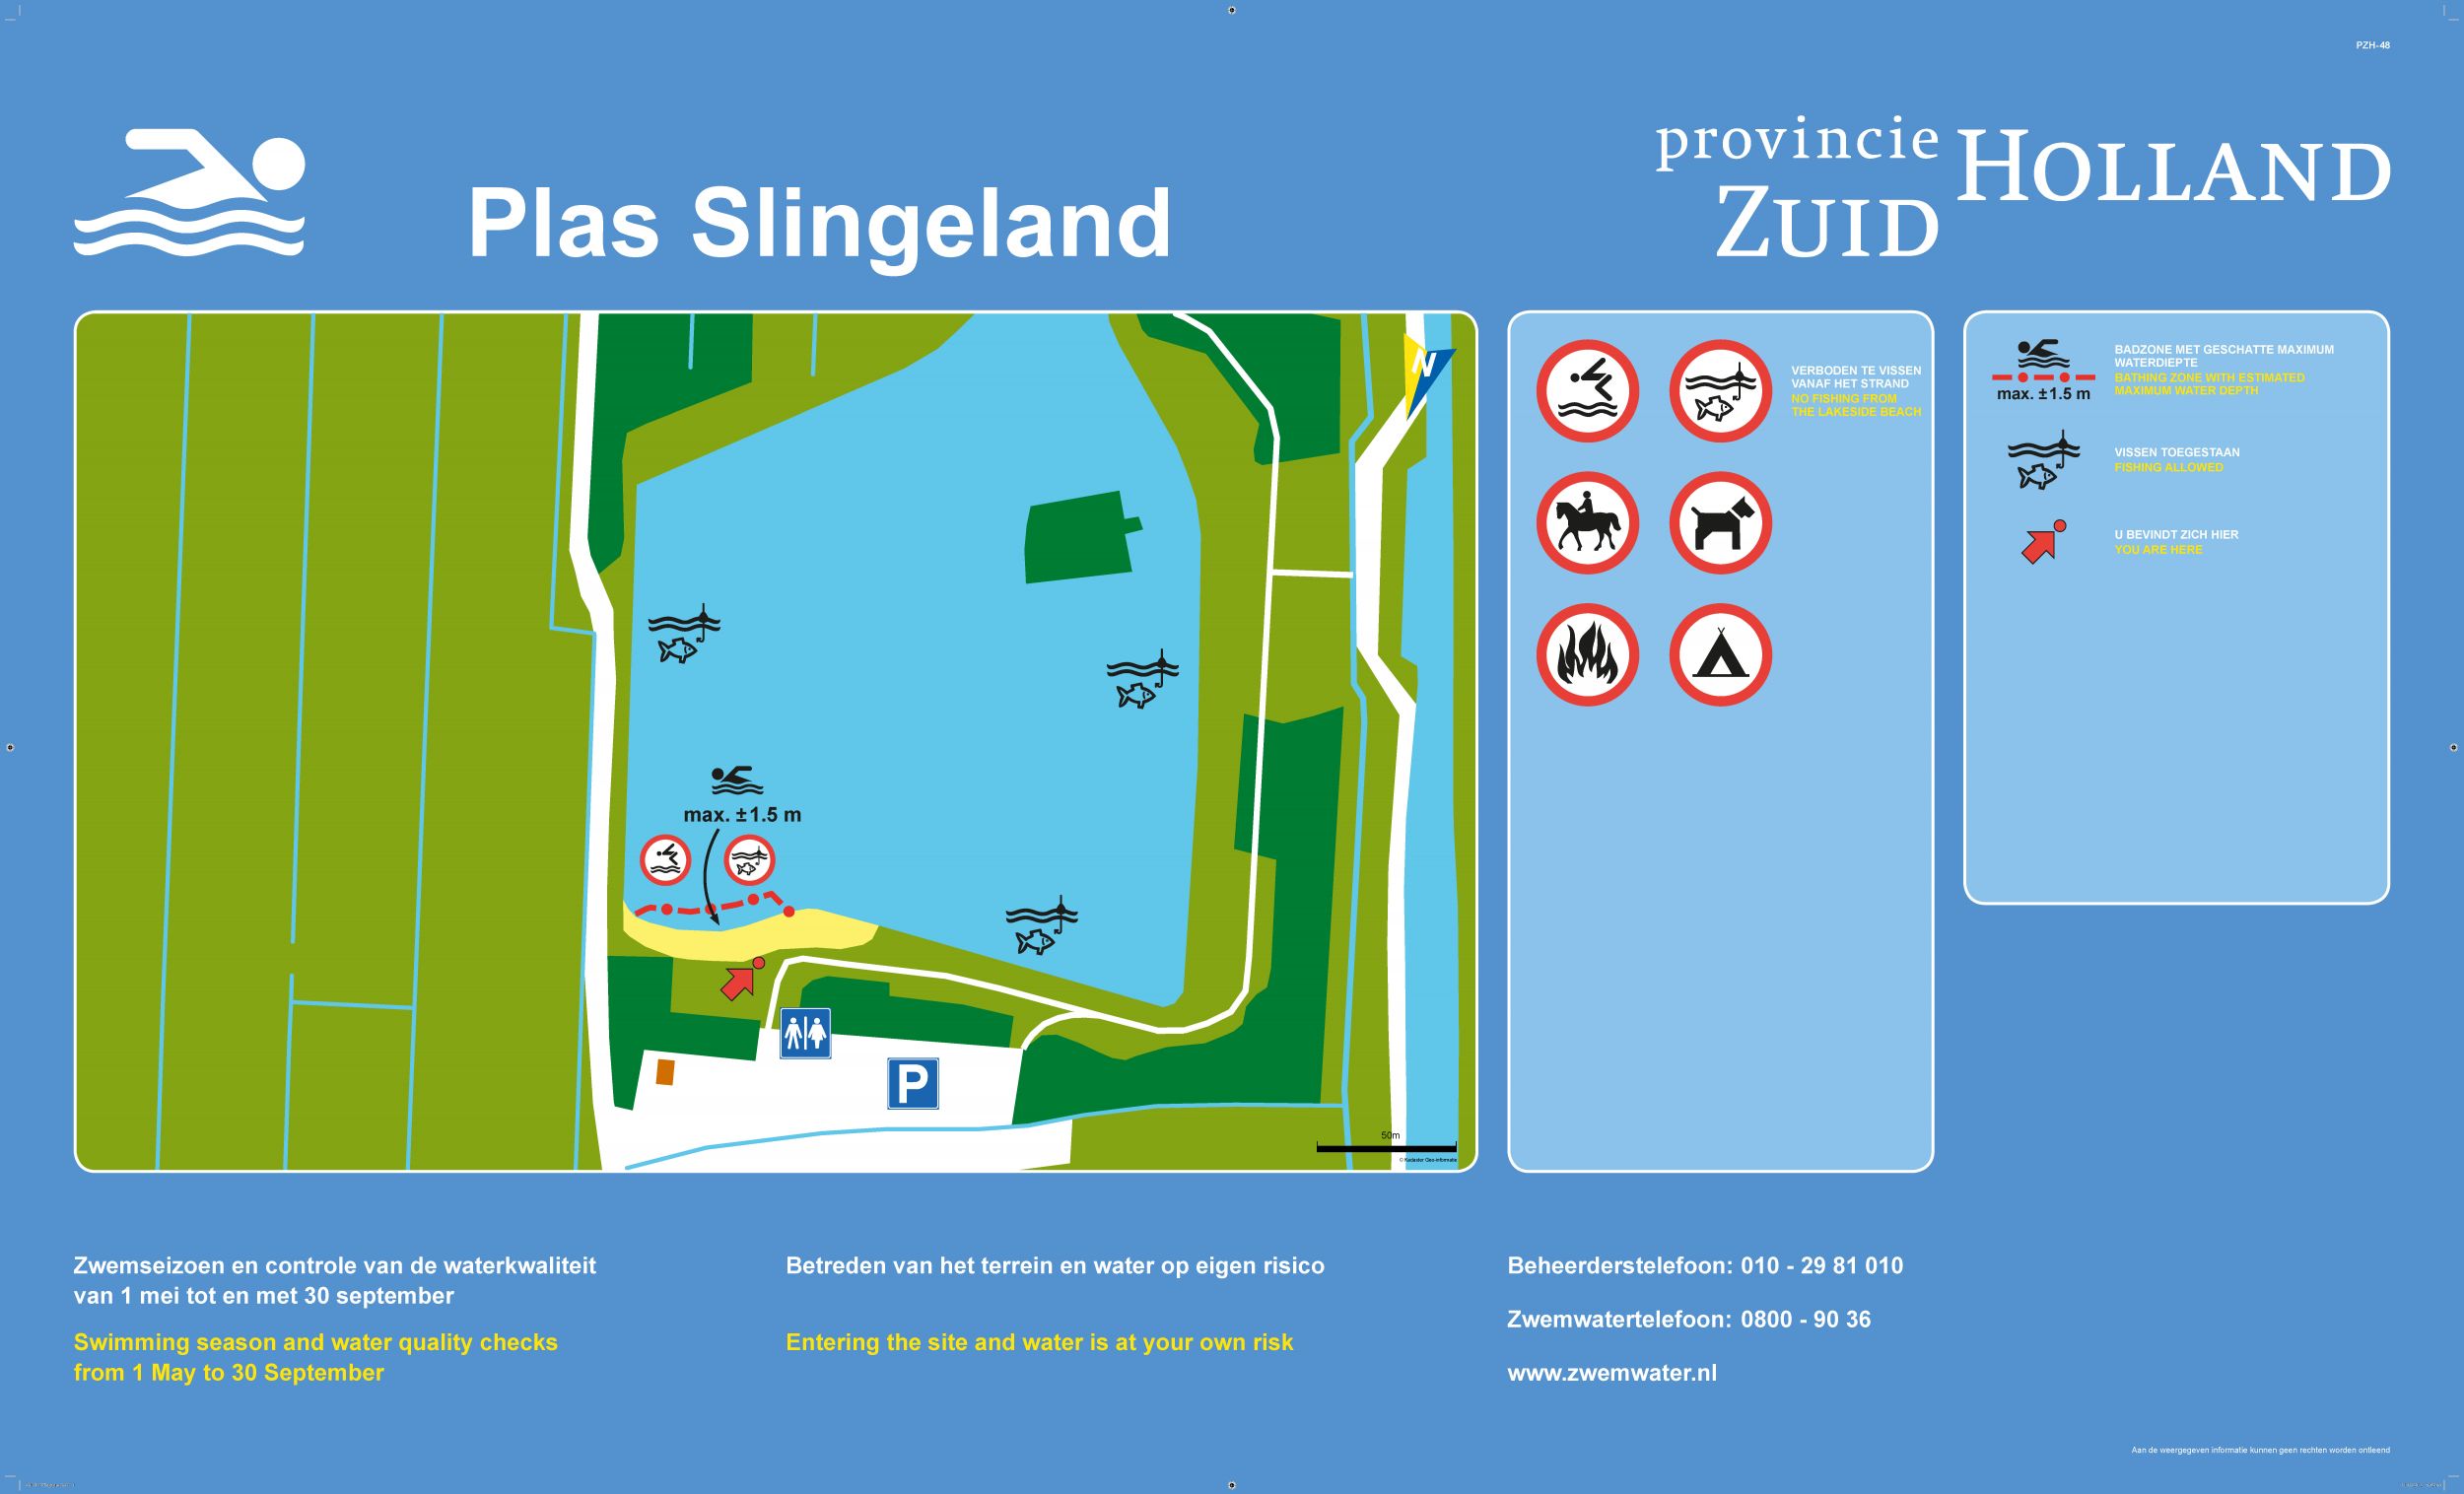 Het informatiebord bij zwemlocatie Plas Slingeland